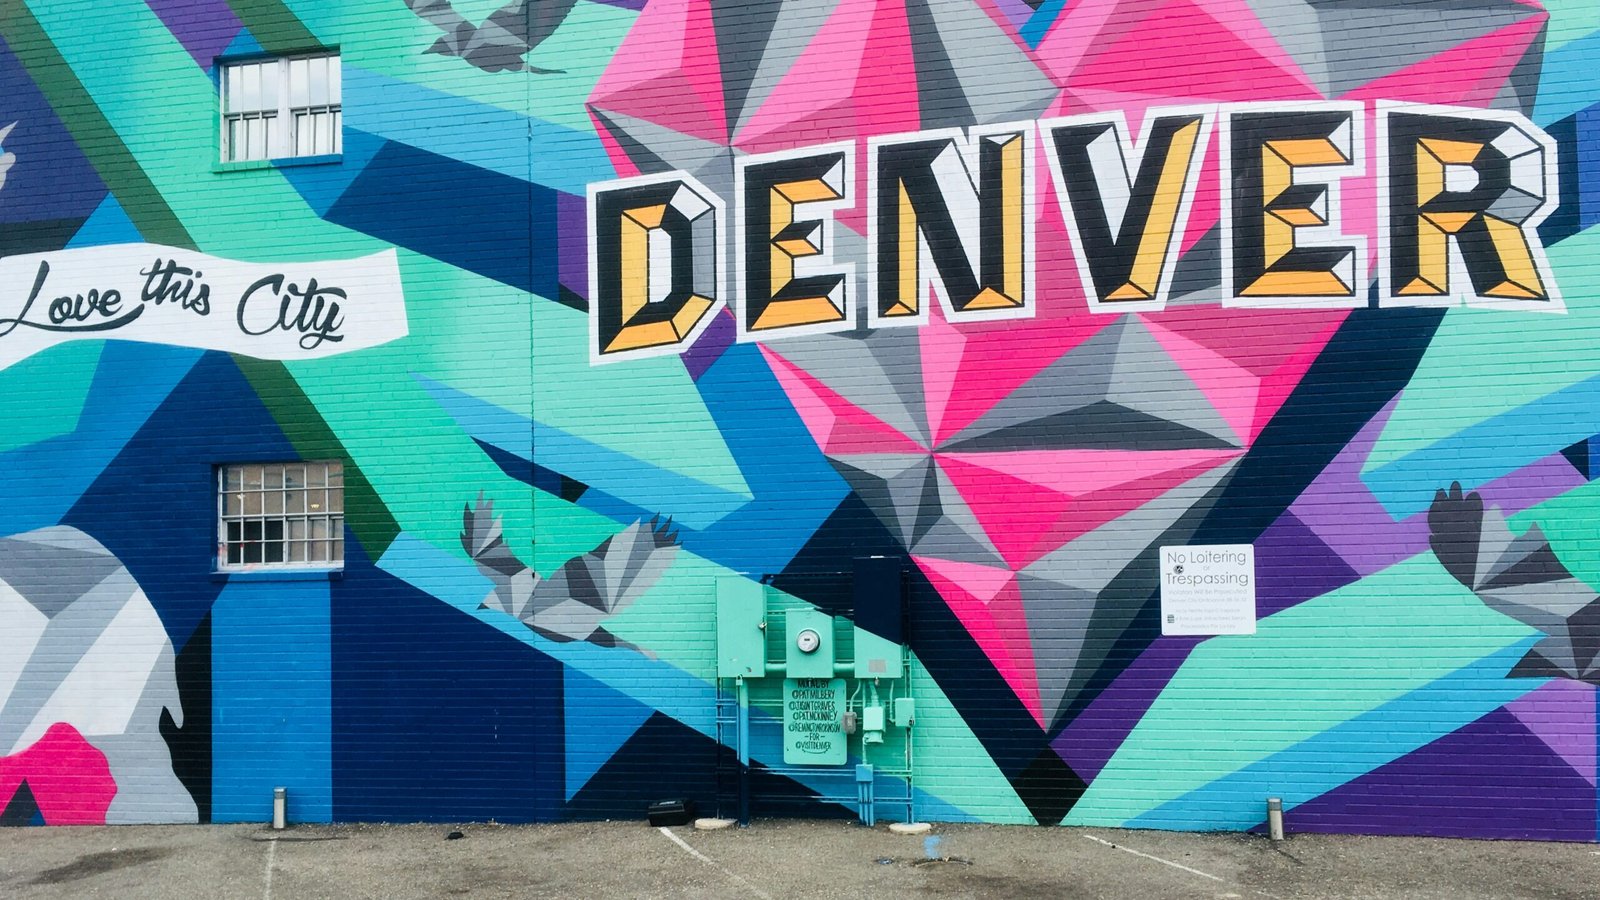 Denver best hair salons guide street art